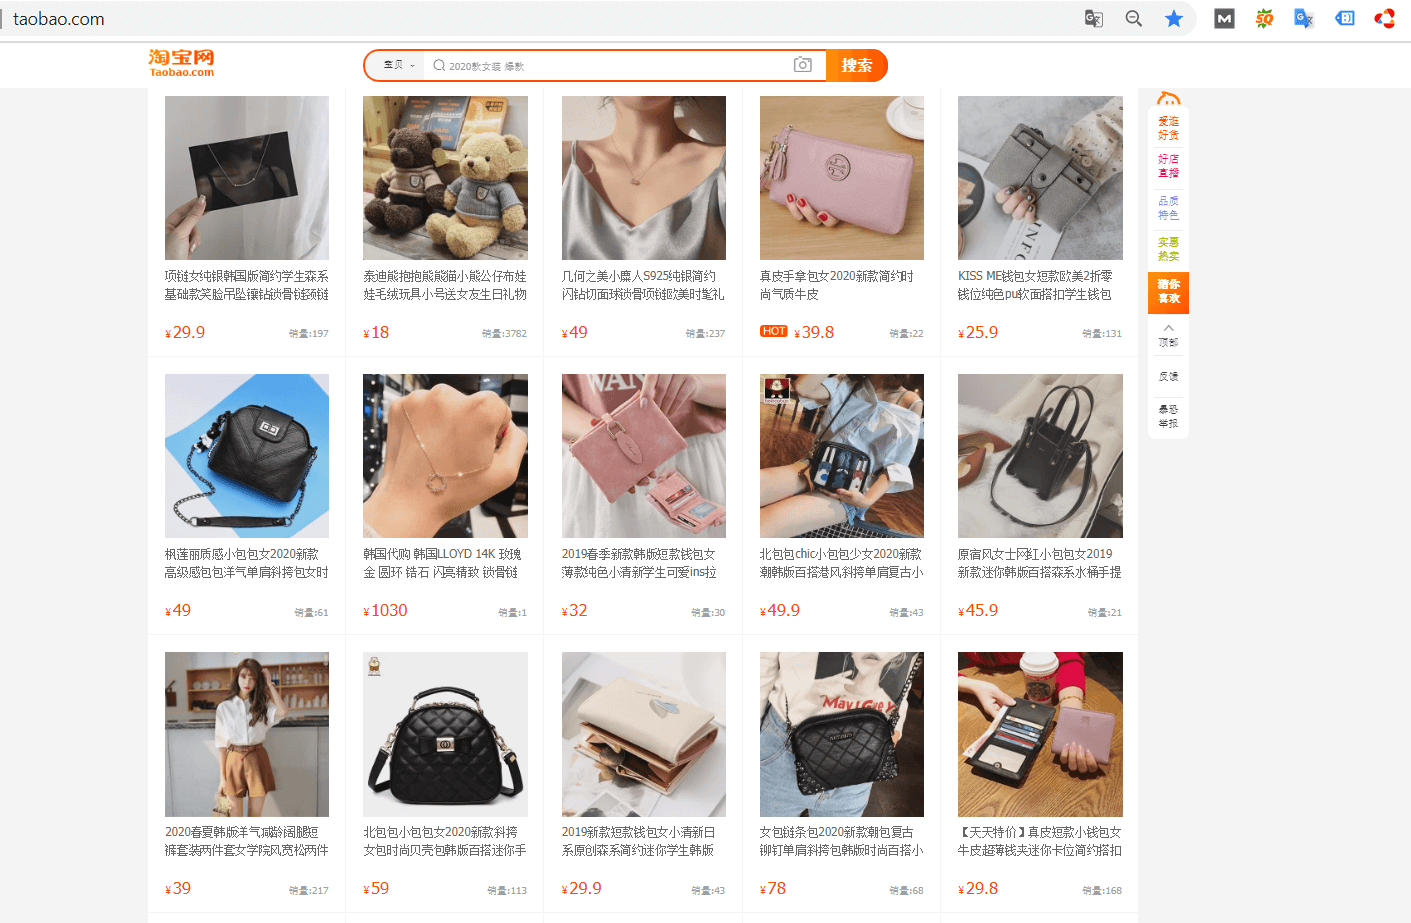 Hàng hóa trên trang TMĐT Taobao vô cùng phong phú, đa dạng